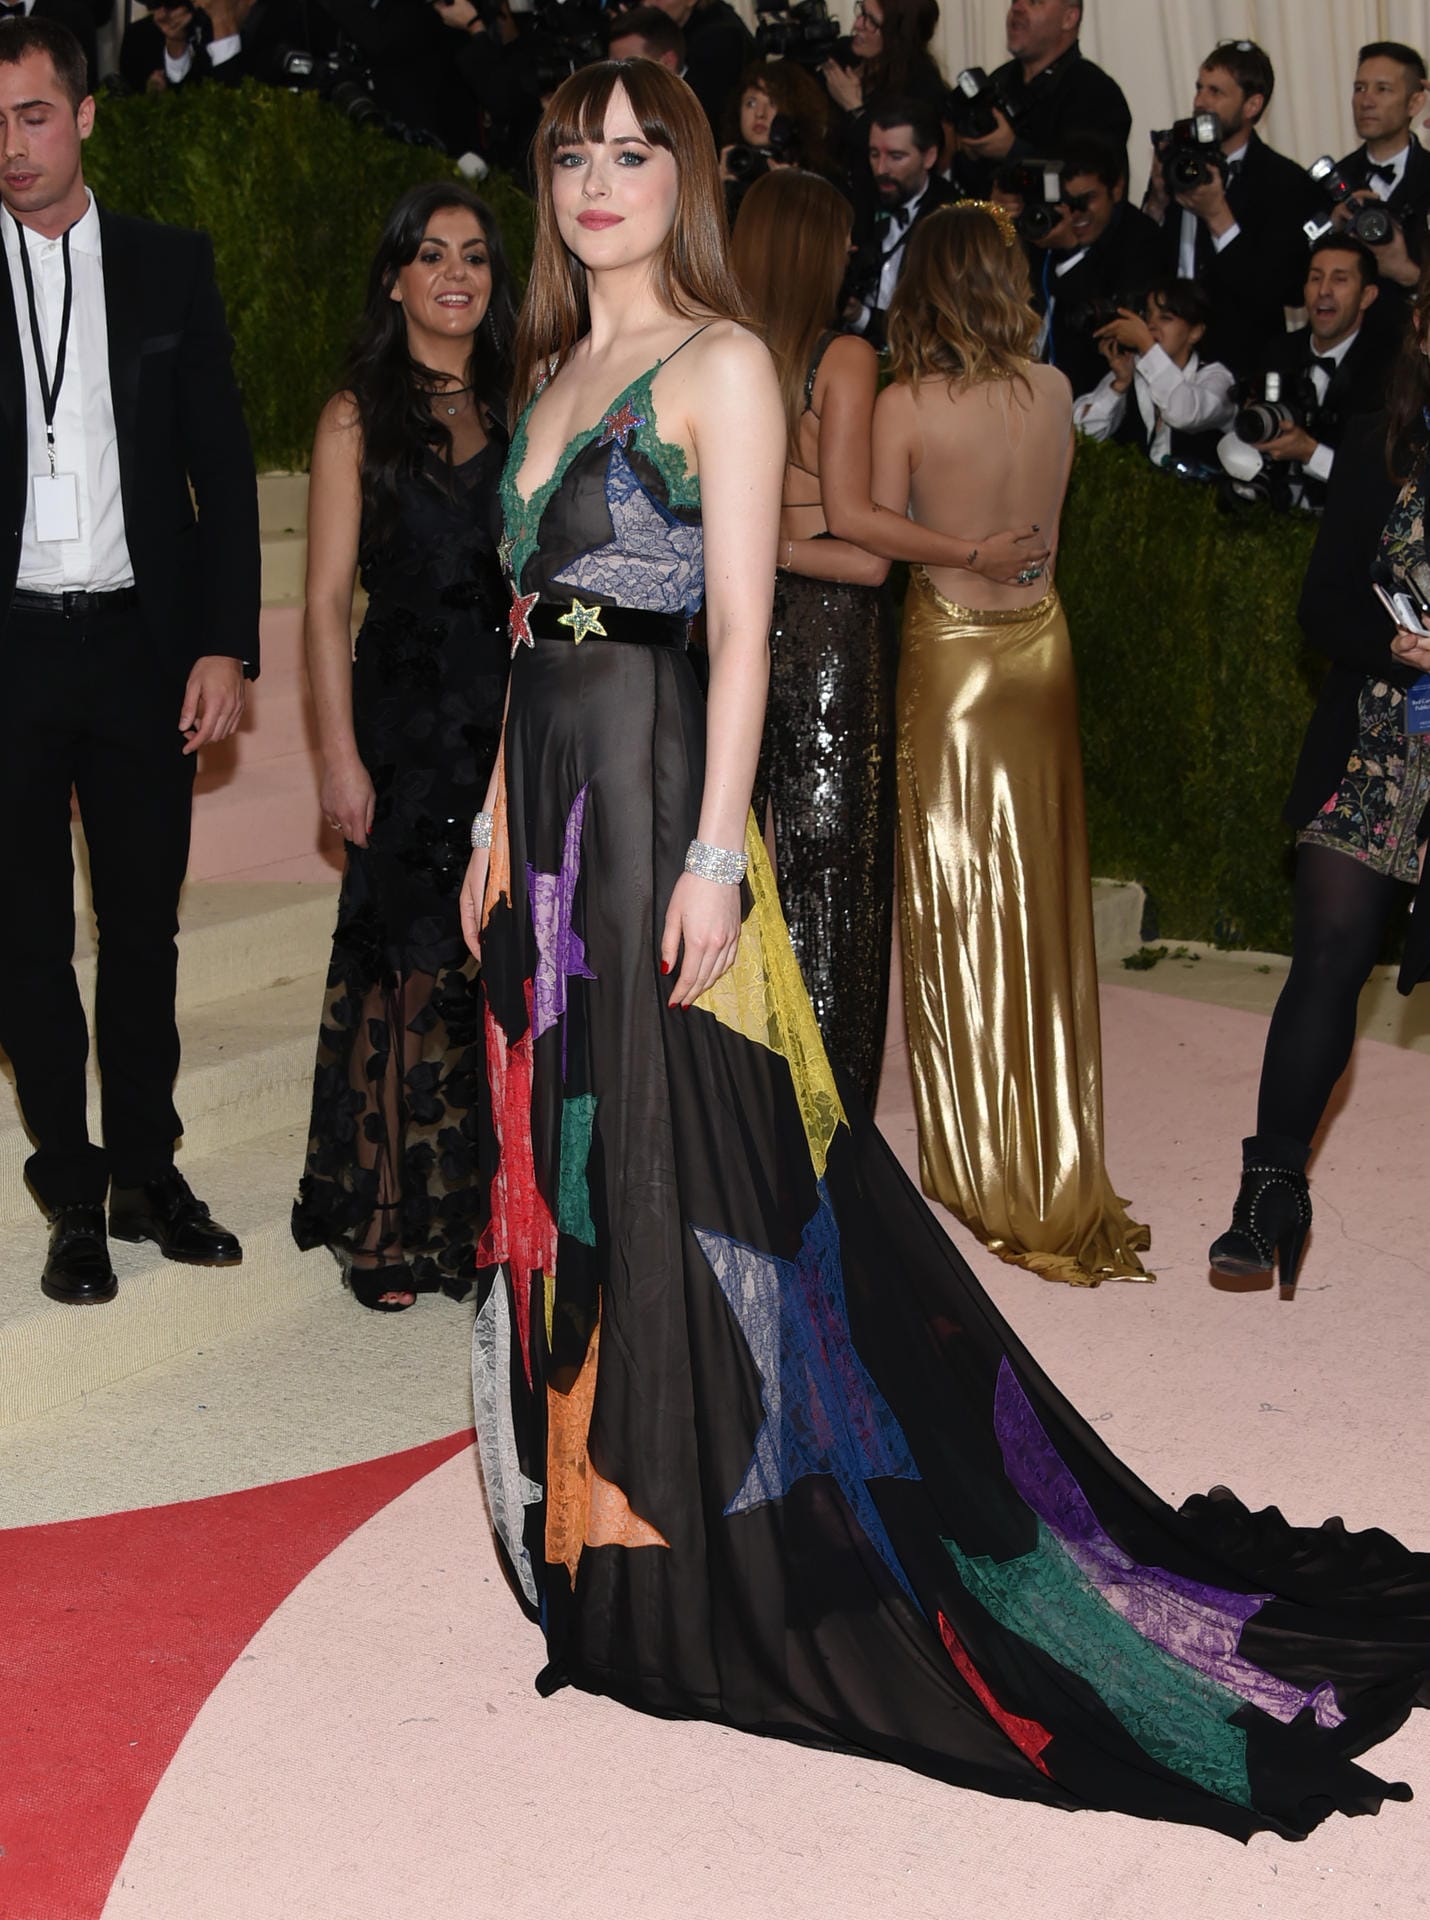 A Star is born? Mit diesem Kleid eher nicht. "Fifty Shades of Grey"-Schauspielerin Dakota Johnson in einem Sternen-Etwas.